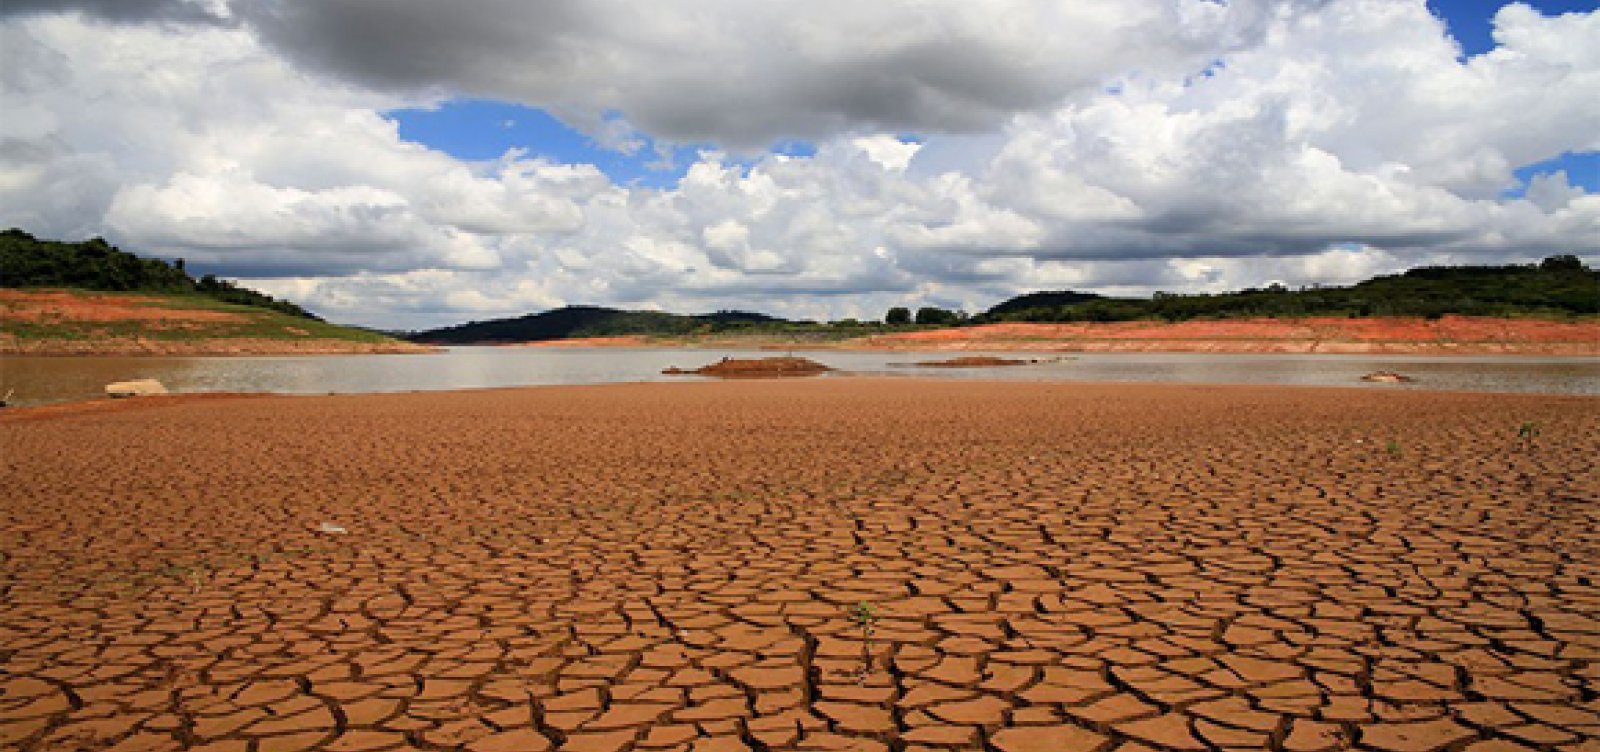 Mais de mil cidades no Brasil estão em situação de seca, revela estudo 